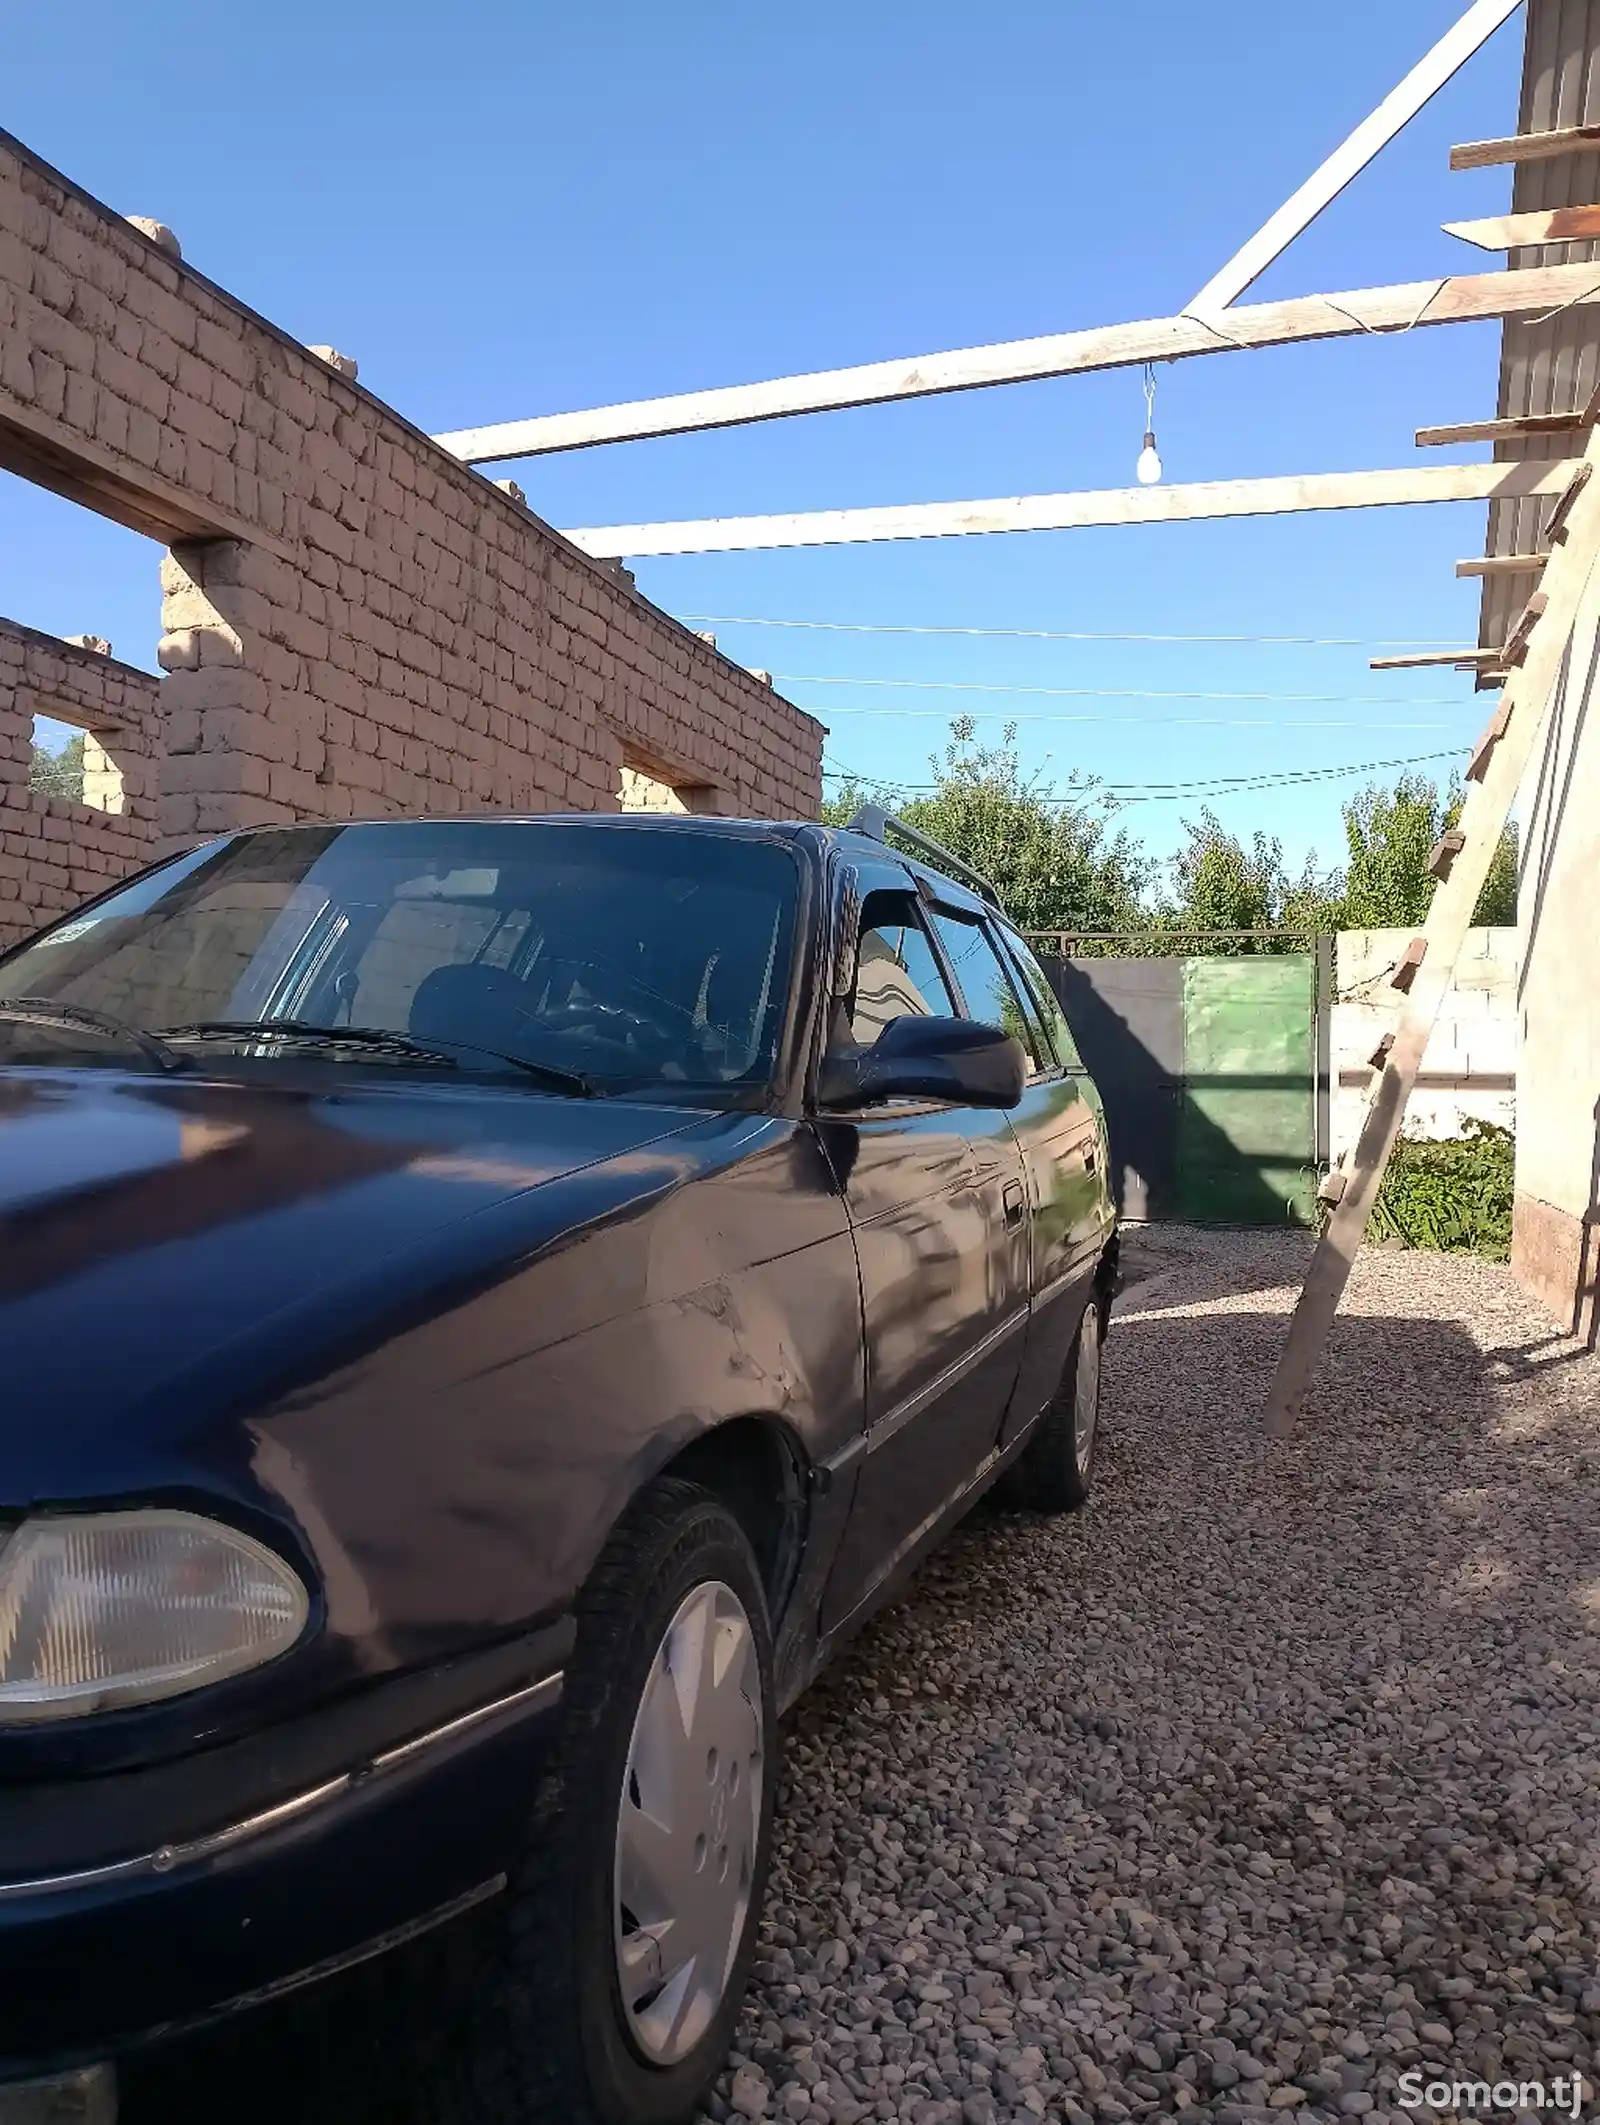 Opel Astra F, 1995-13